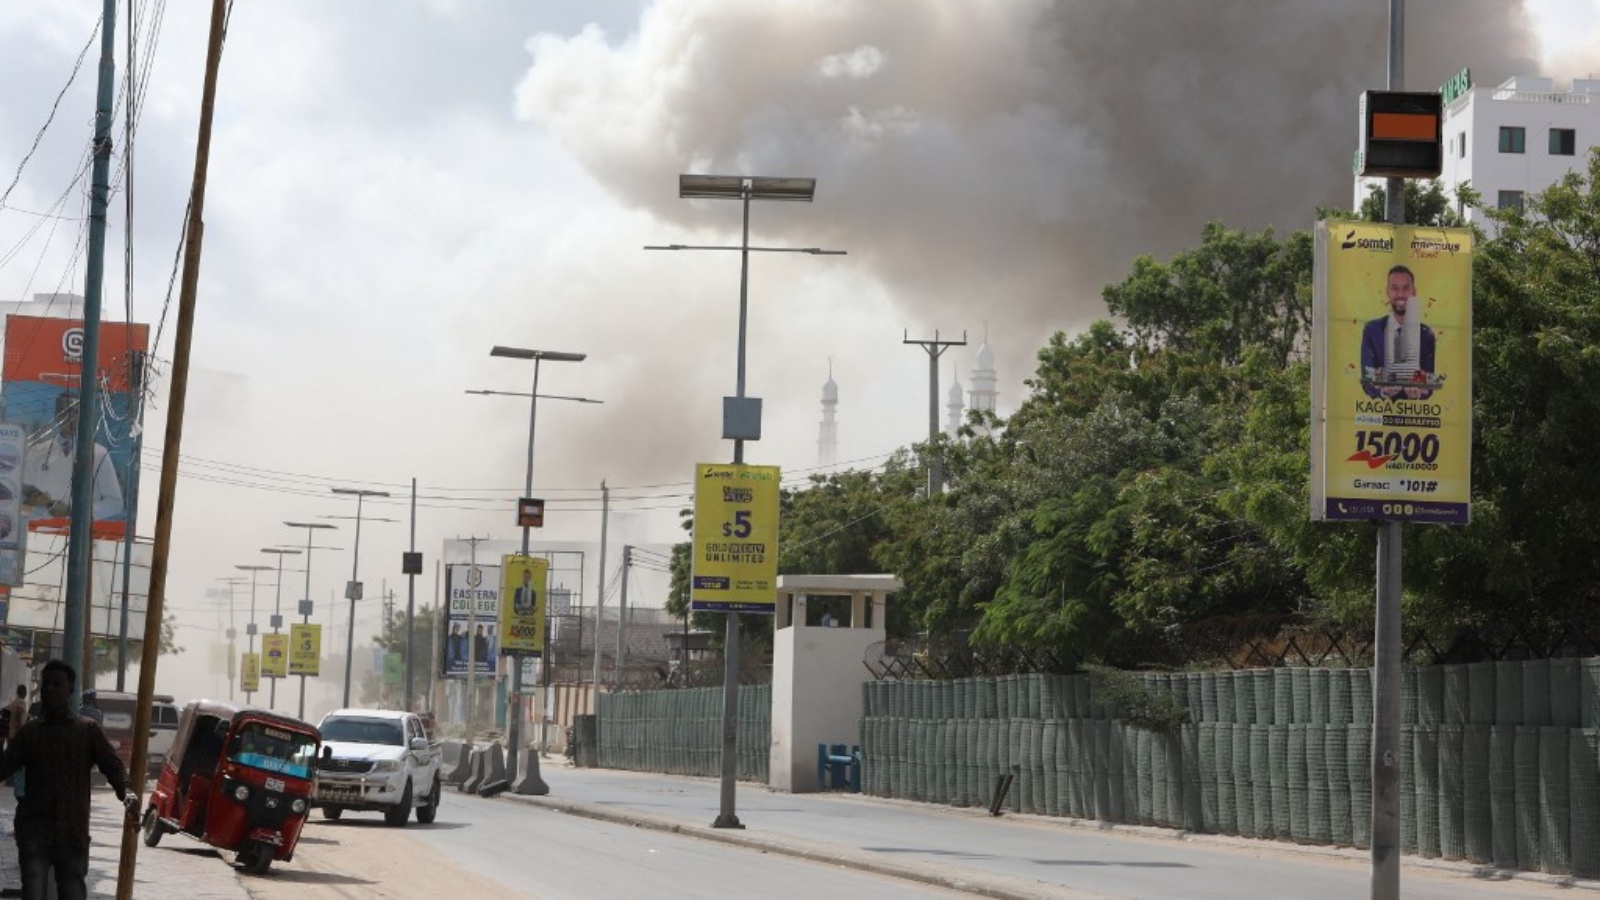 دخان يتصاعد فوق المدينة بينما يسير الناس في أحد الشوارع بعد انفجار كبير بالقرب من وزارة التعليم في مقديشو في 29 أكتوبر 2022